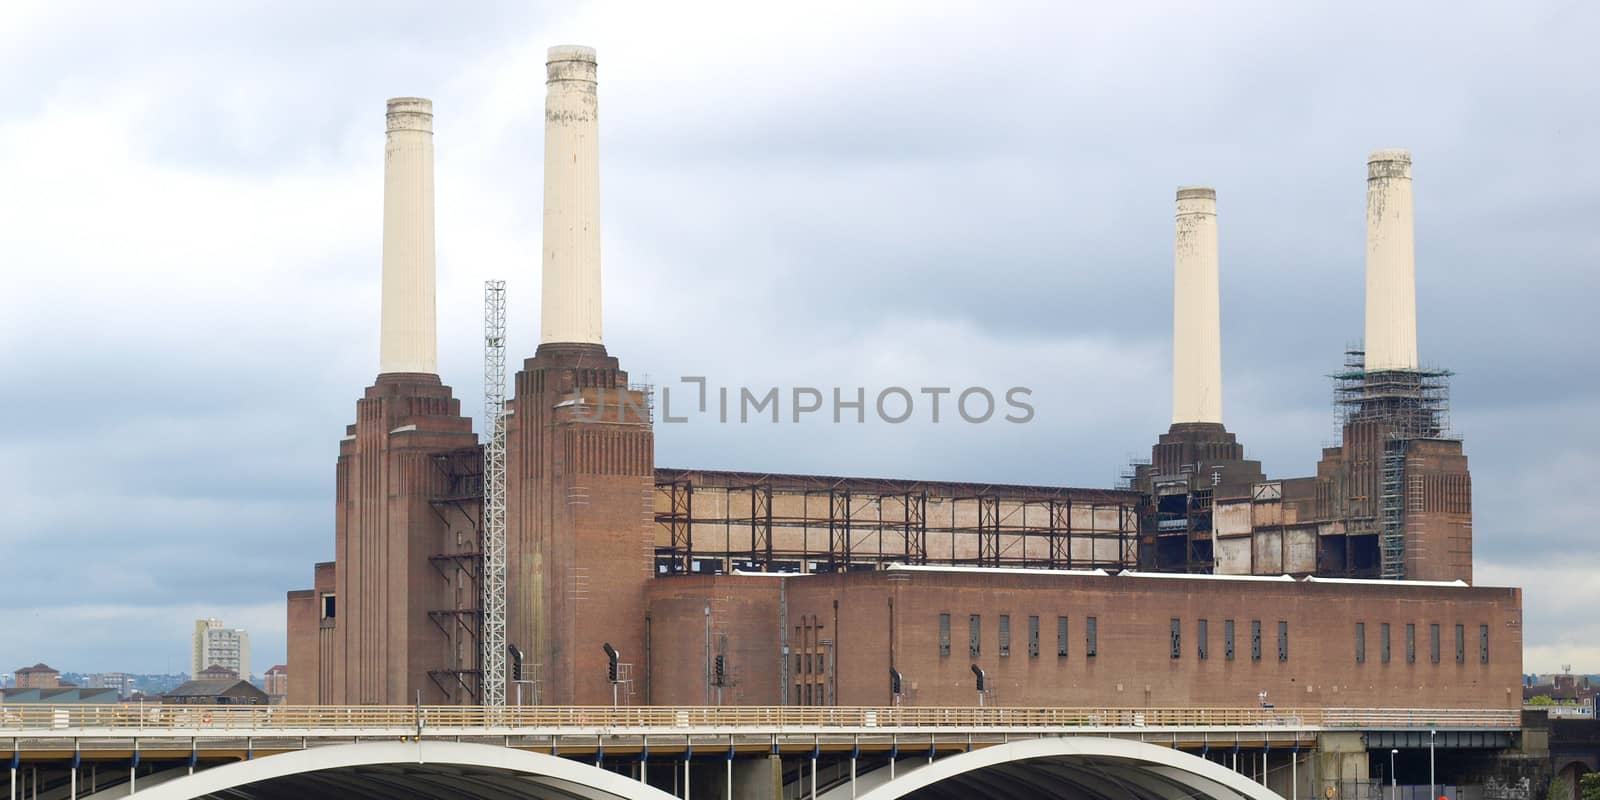 Battersea Power Station in London, England, UK